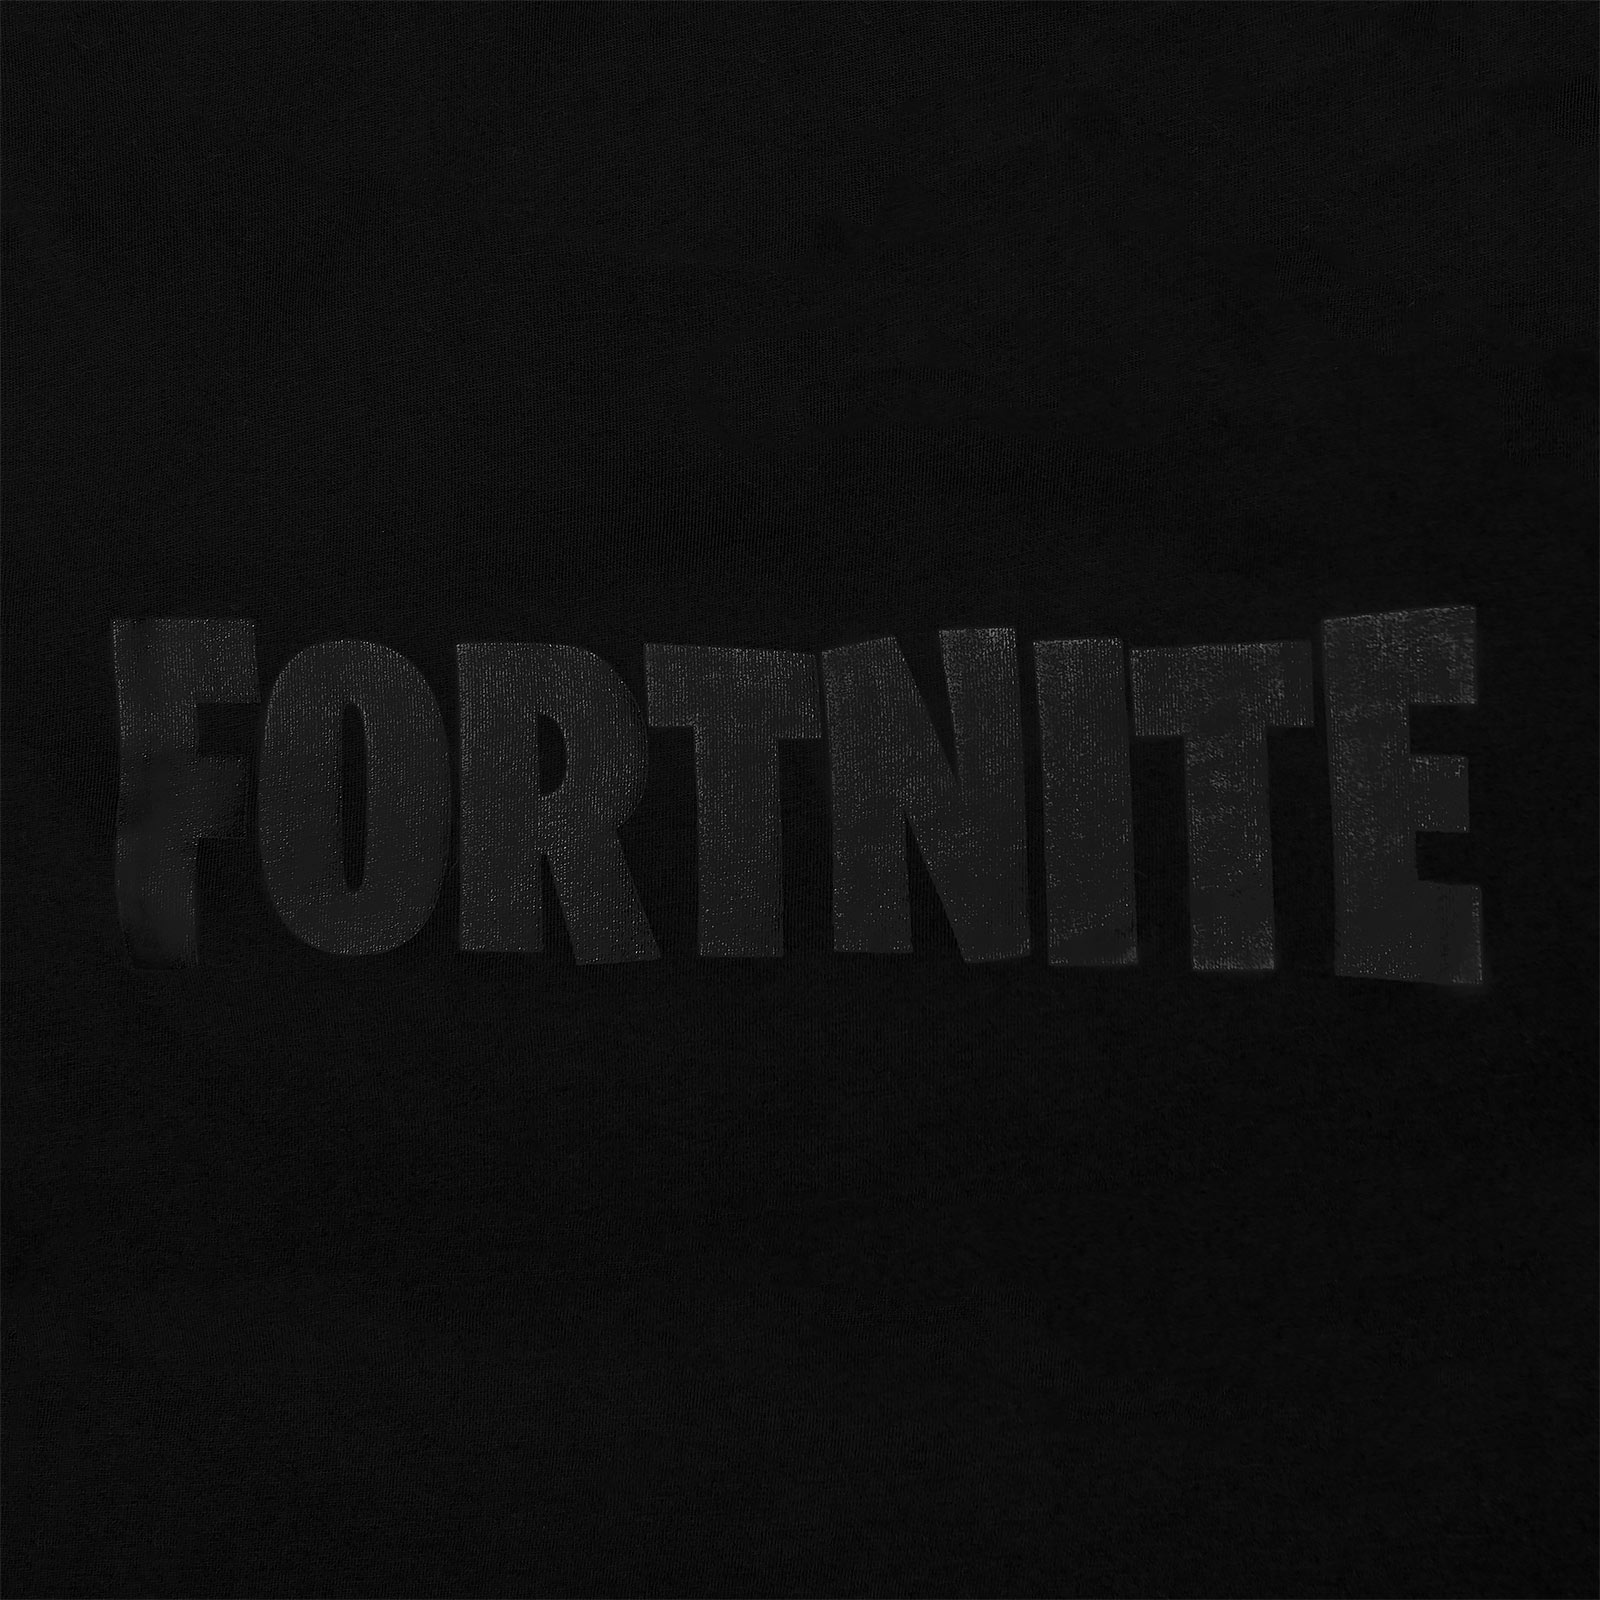 Fortnite - Logo T-shirt zwart